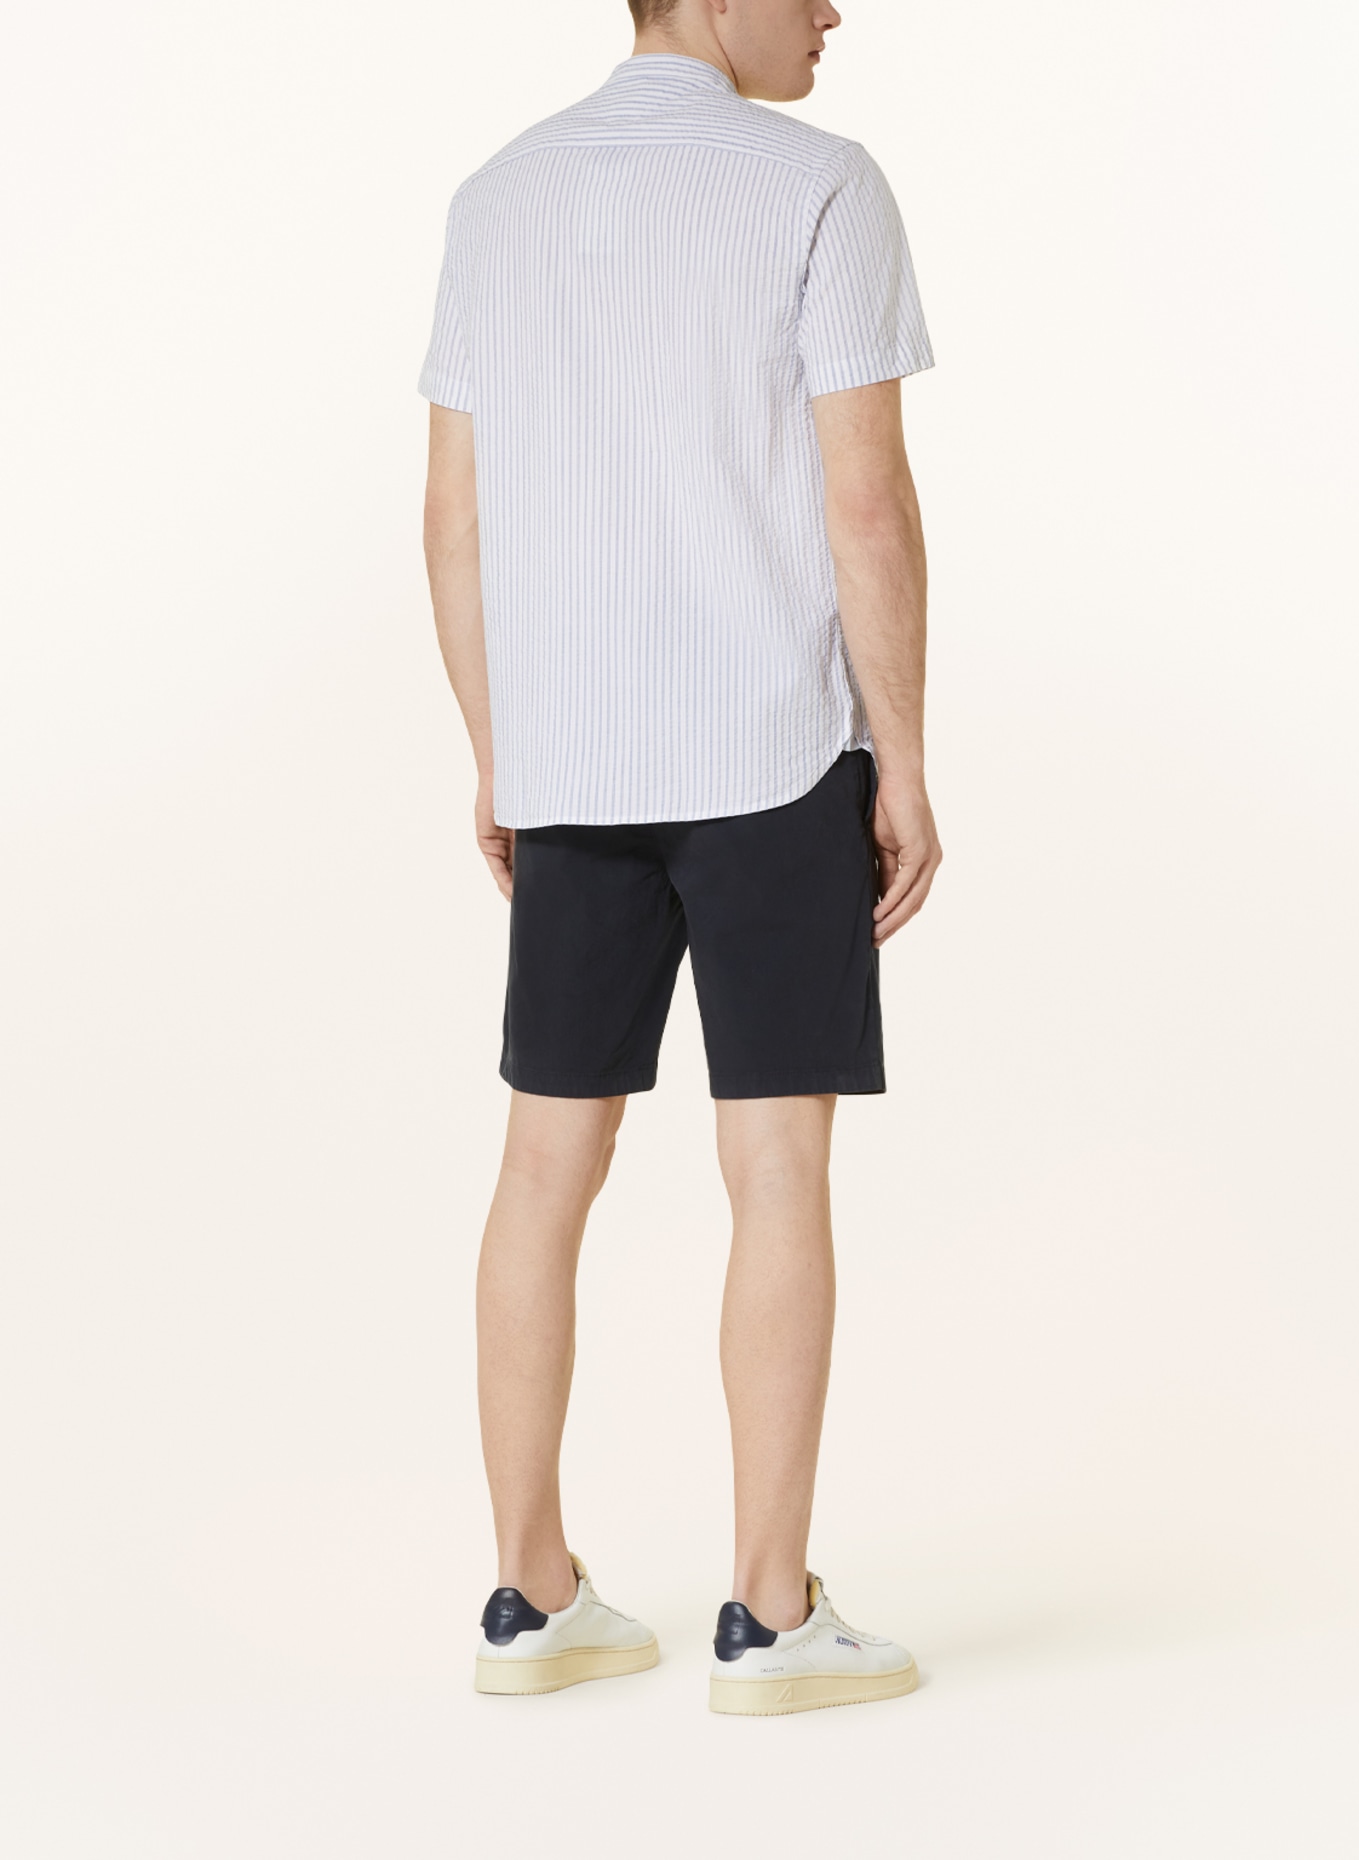 TOMMY HILFIGER Short sleeve shirt regular fit, Color: LIGHT BLUE/ WHITE (Image 3)